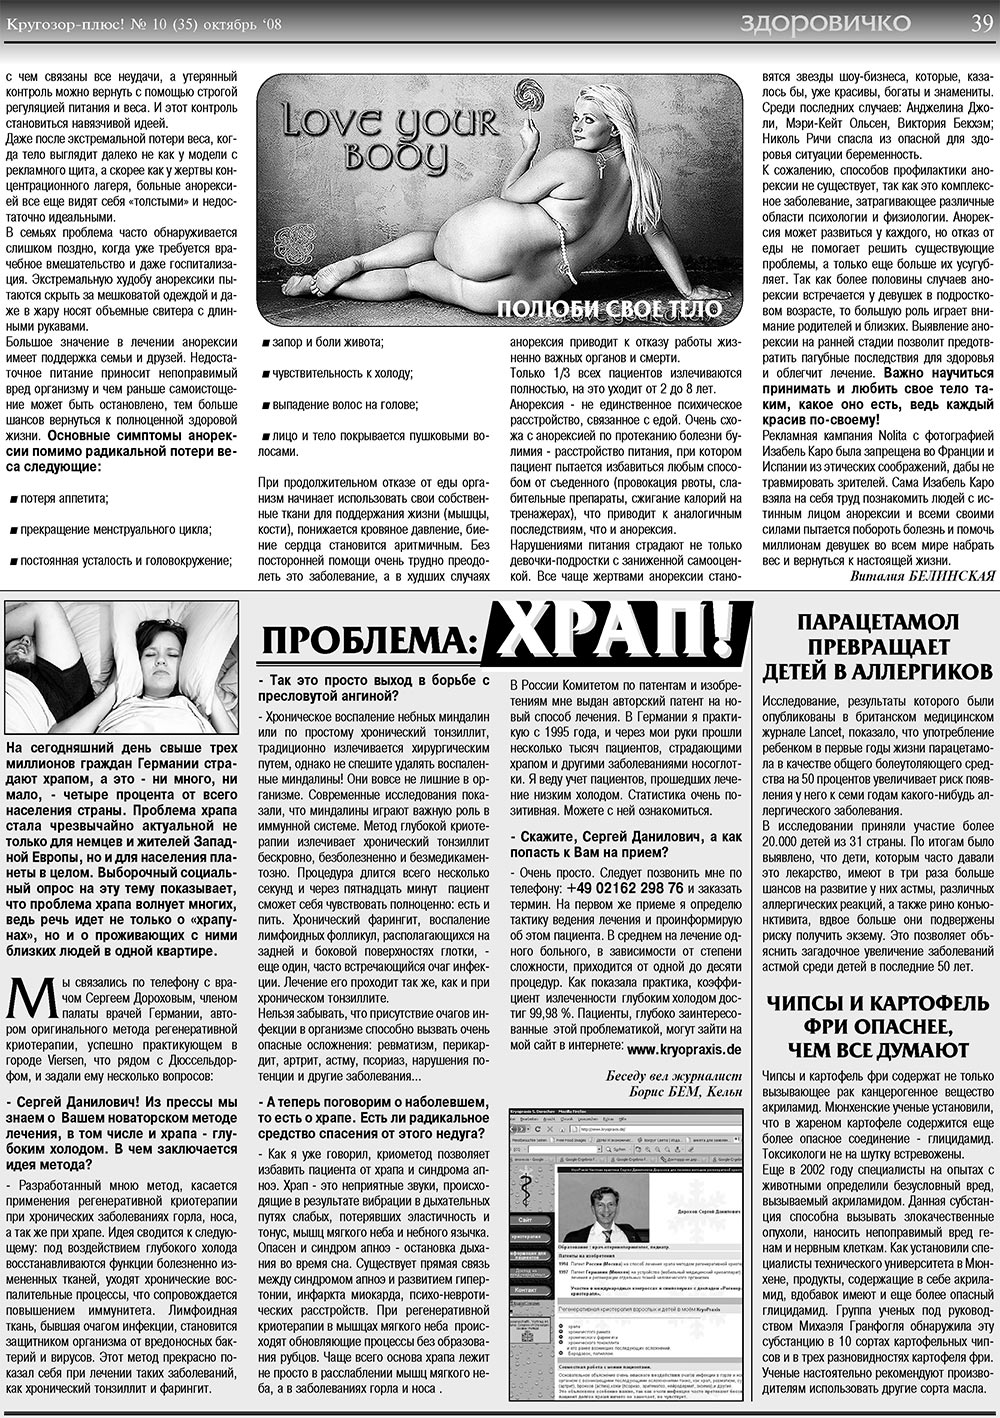 Кругозор плюс!, газета. 2008 №10 стр.39